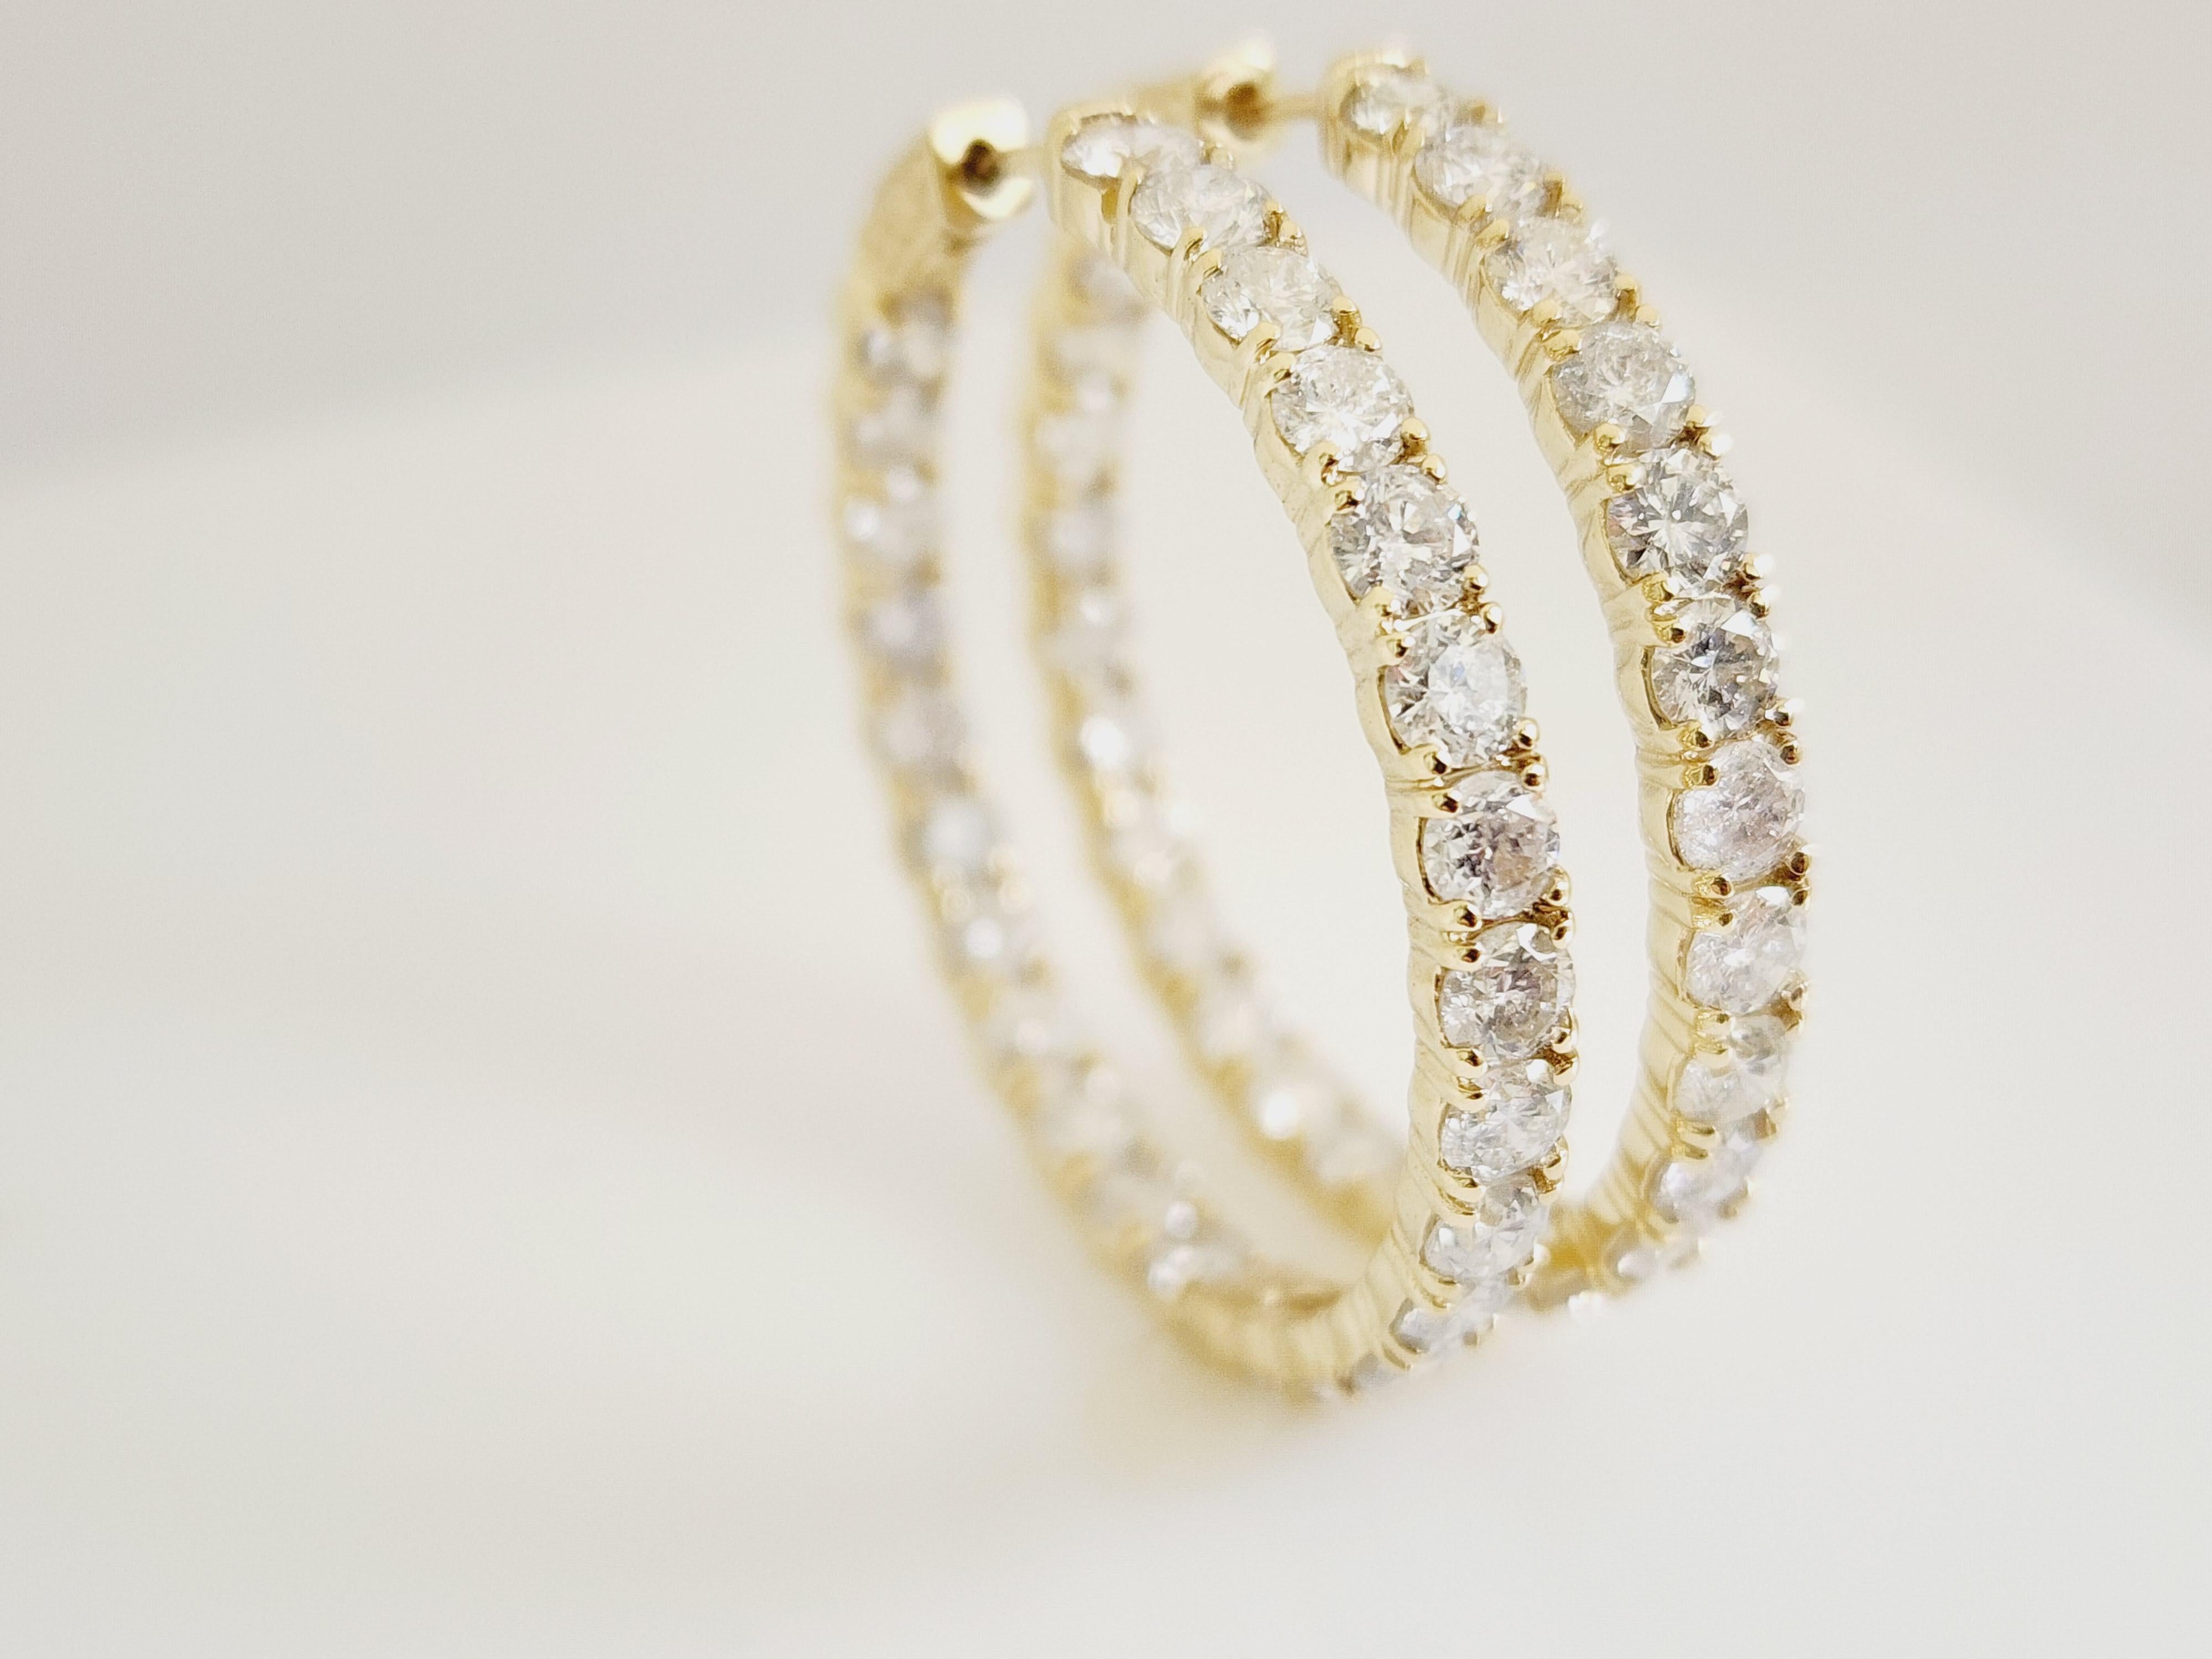 10 Carat Diamond Hoops Earrings 14 Karat Yellow Gold For Sale 2